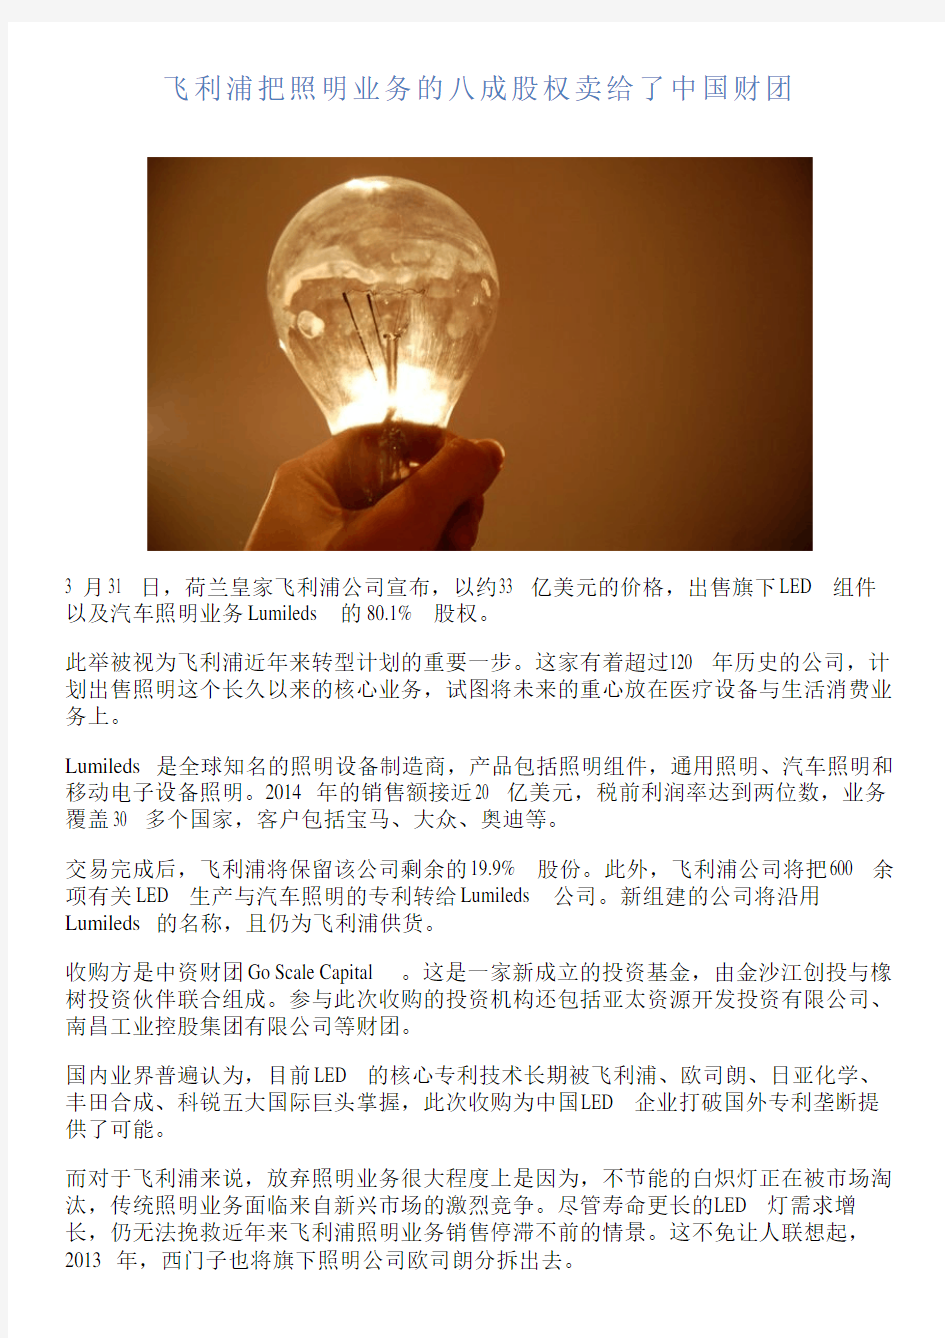 飞利浦把照明业务的八成股权卖给了中国财团